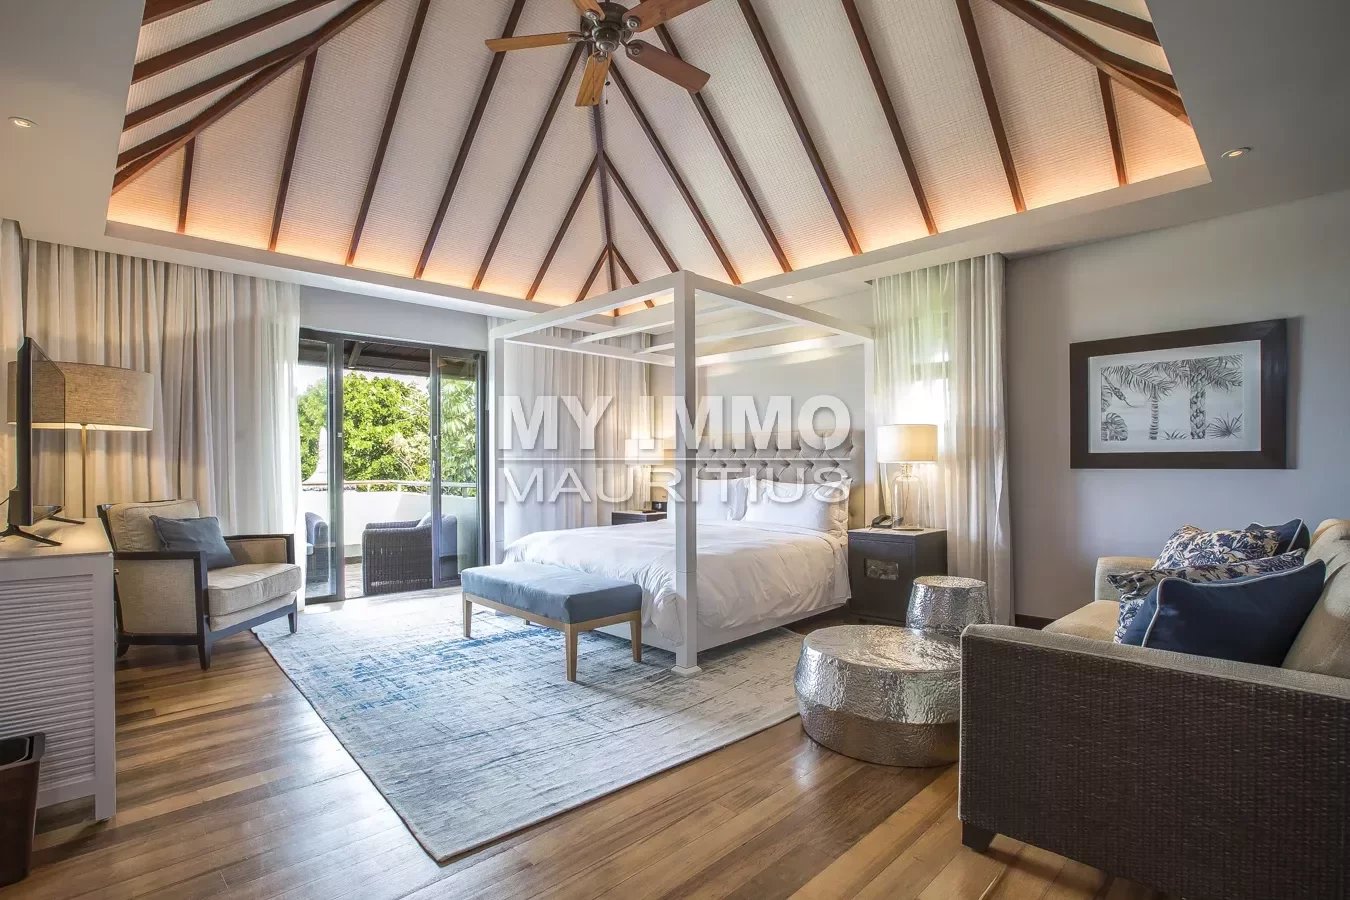 5 bedroom villa with sea view